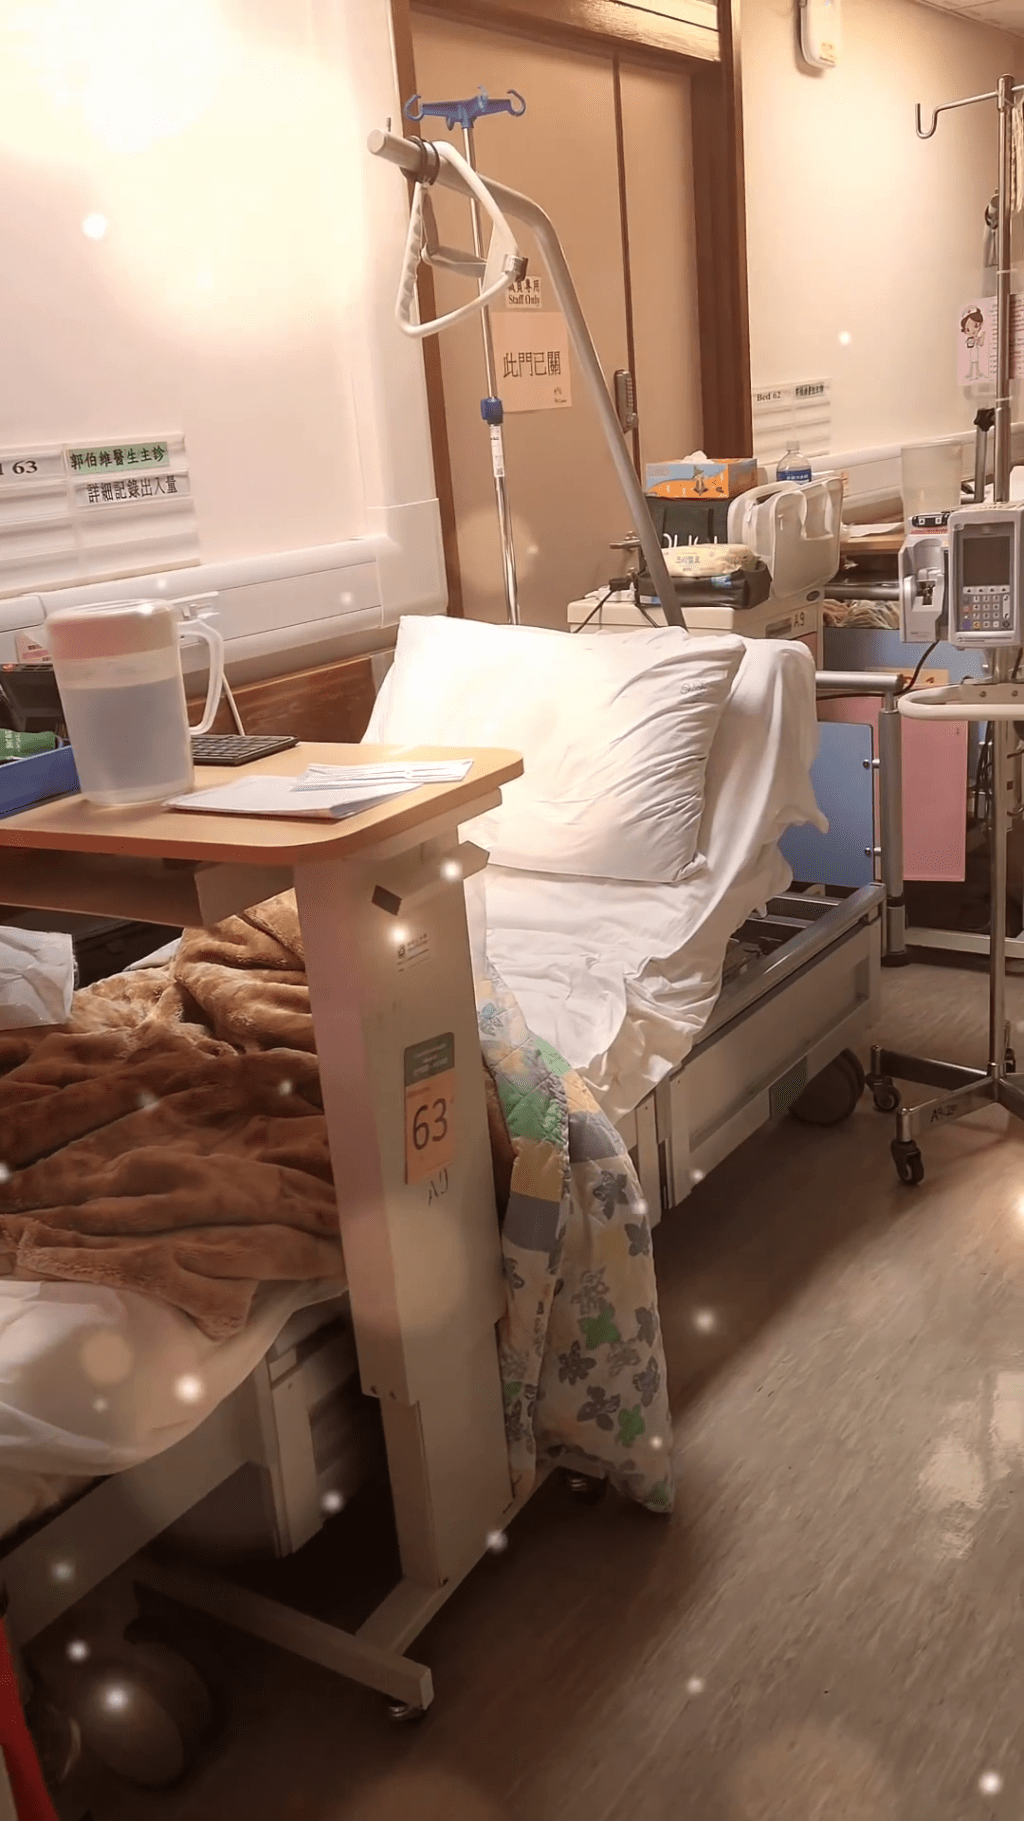 文頌男獲安排的病床疑似在走廊位置。